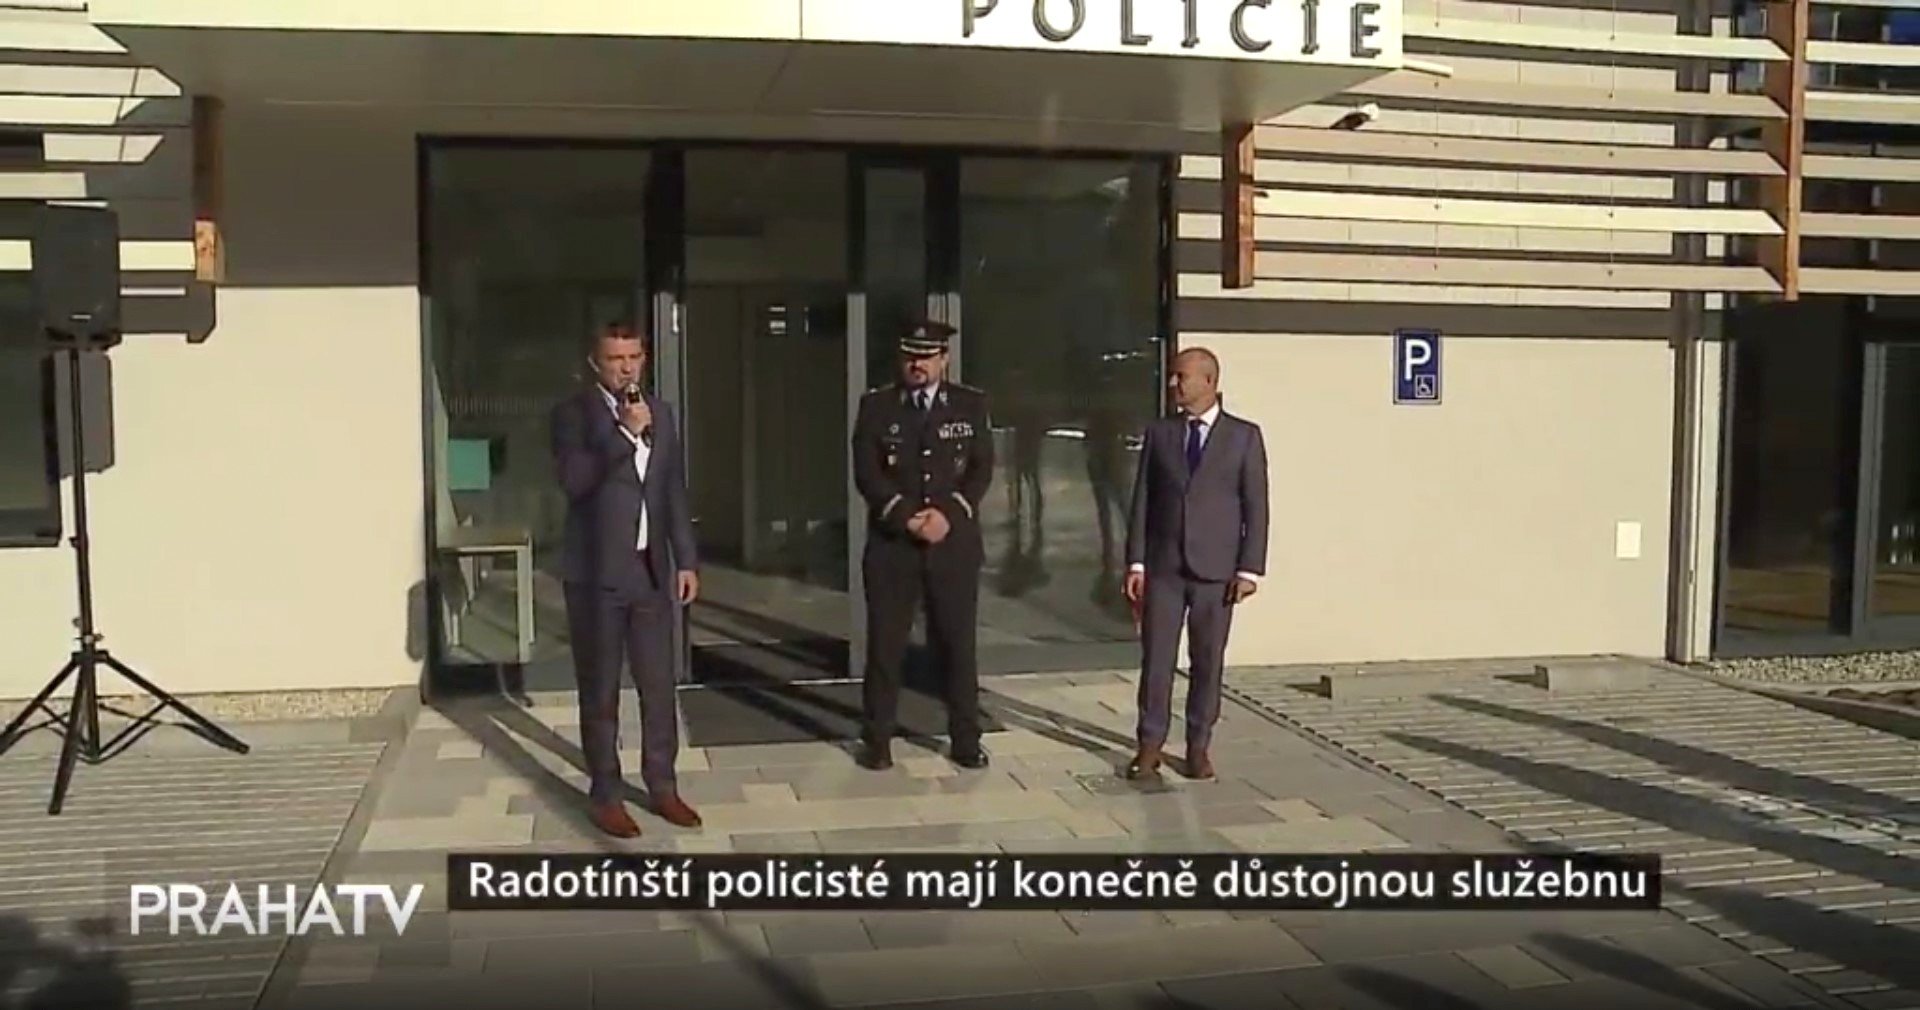 Radotínští policisté mají konečně důstojnou služebnu